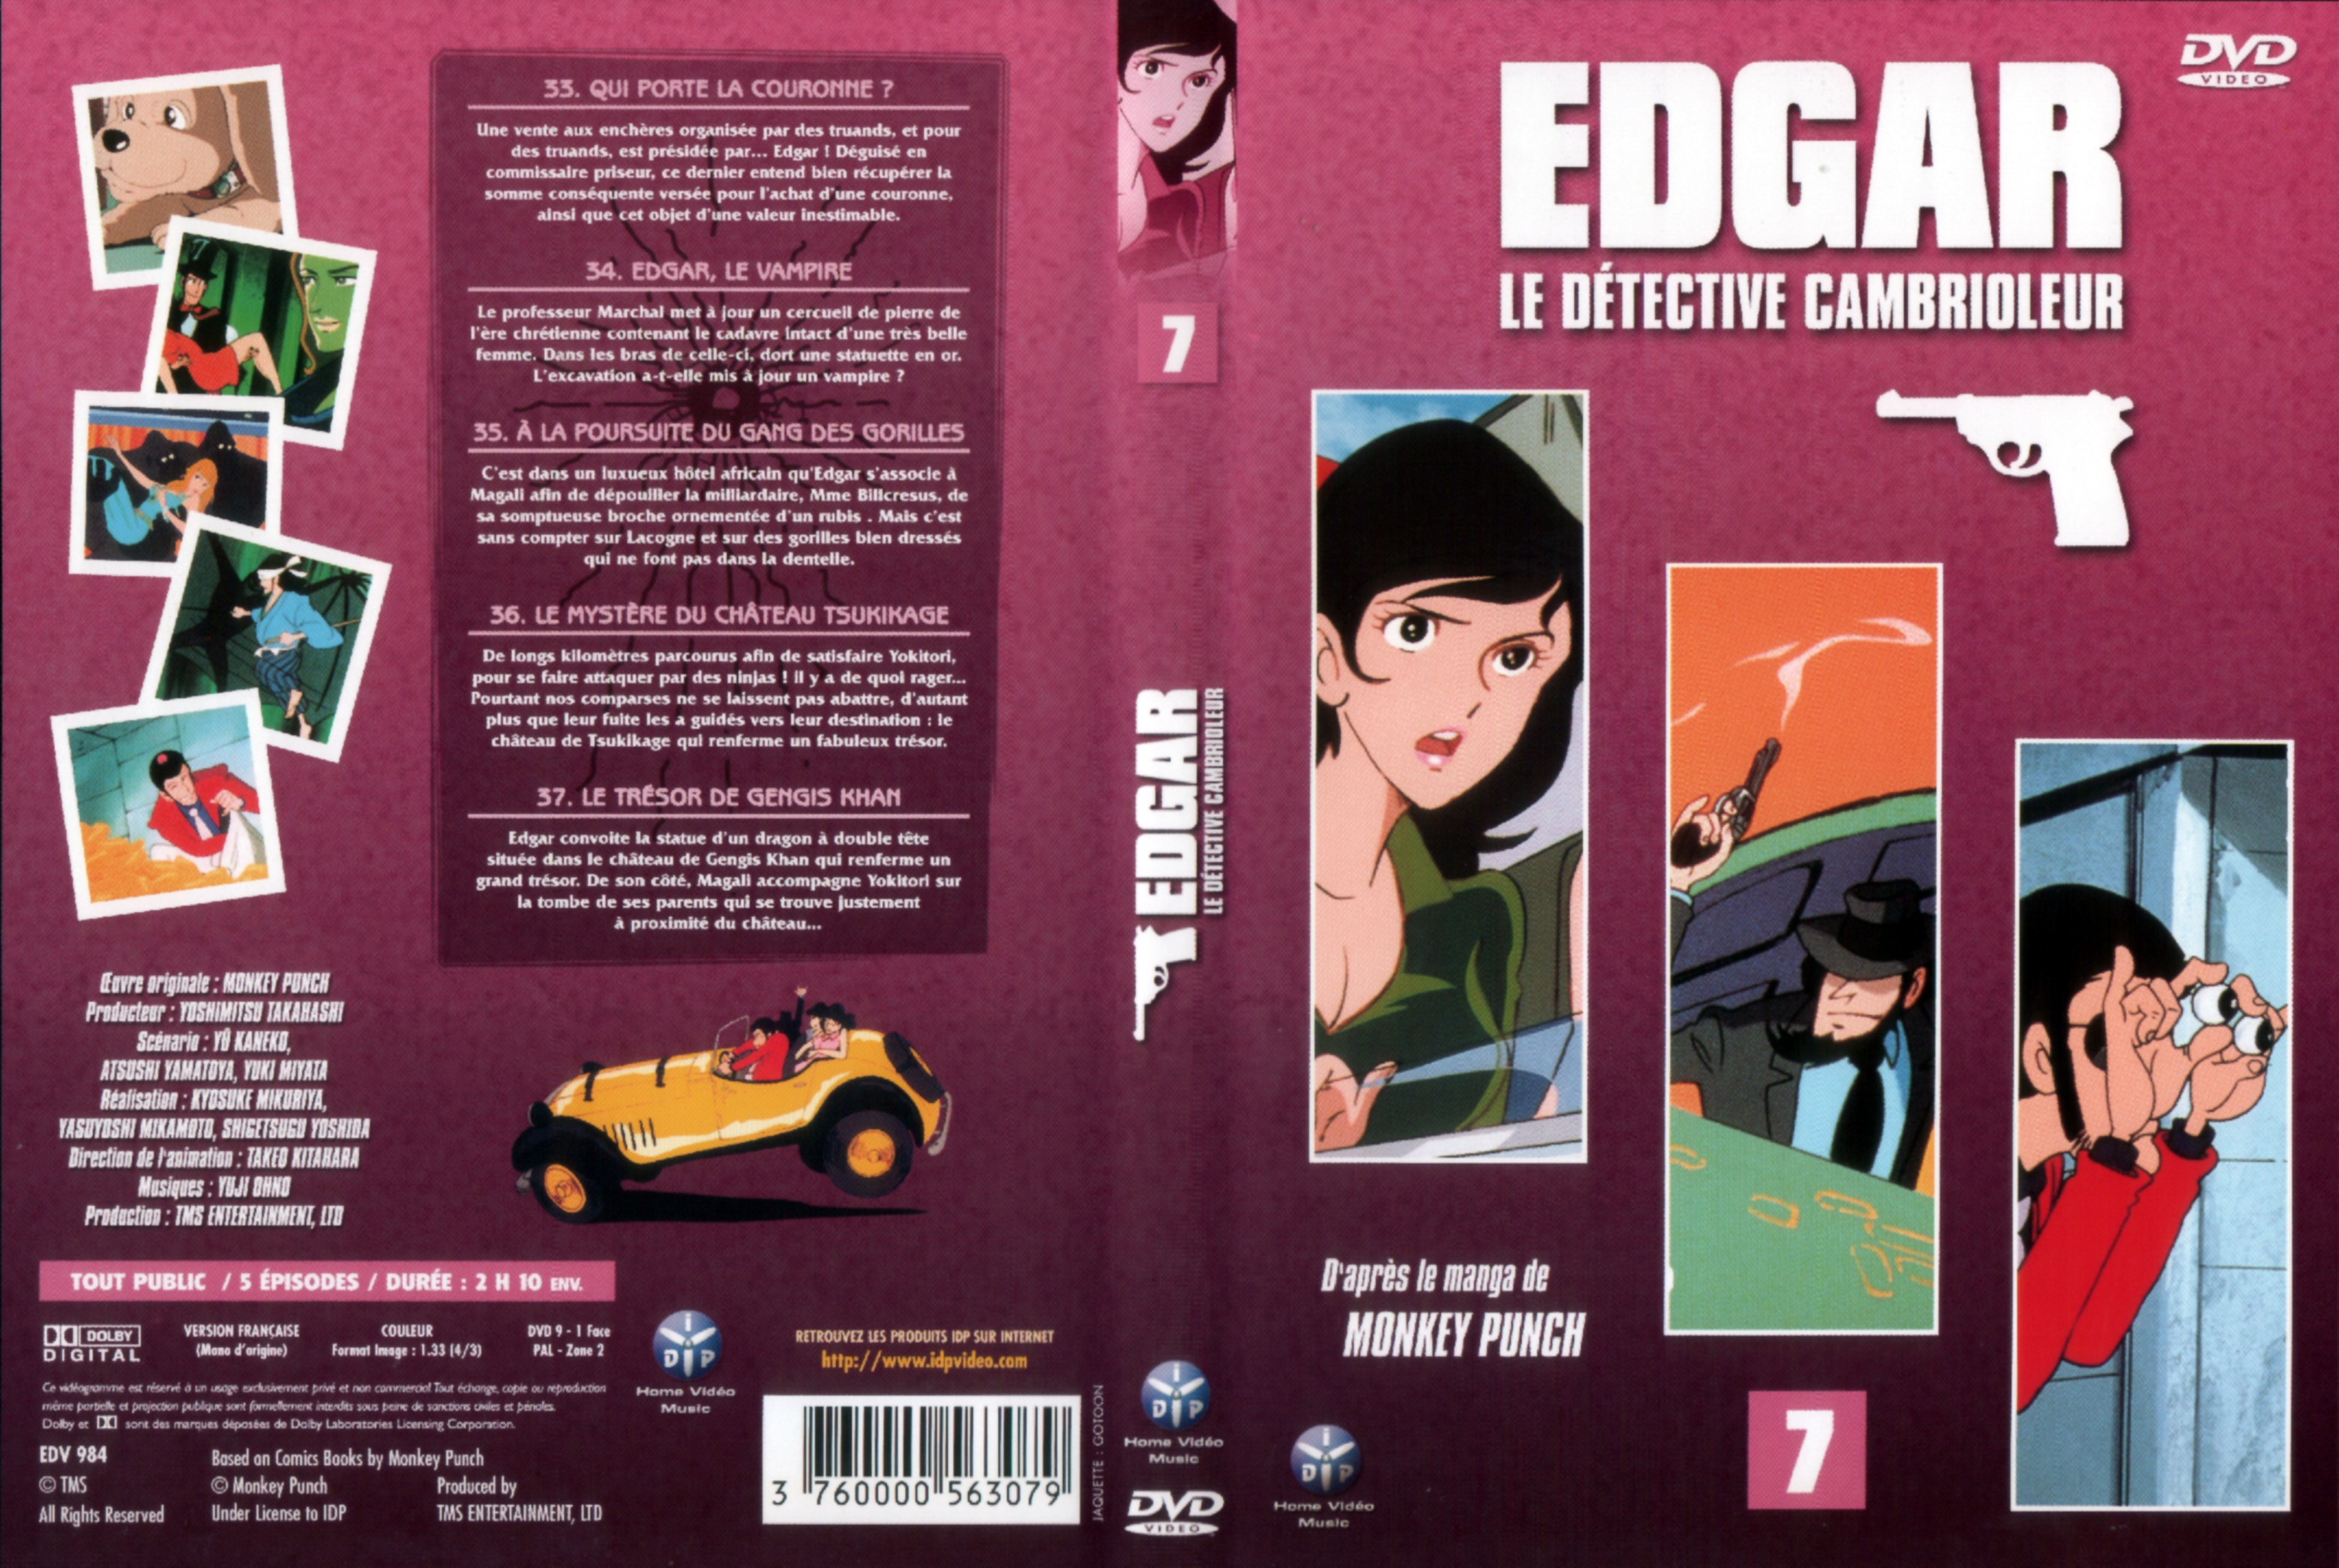 Jaquette DVD Edgar le detective cambrioleur DVD 07